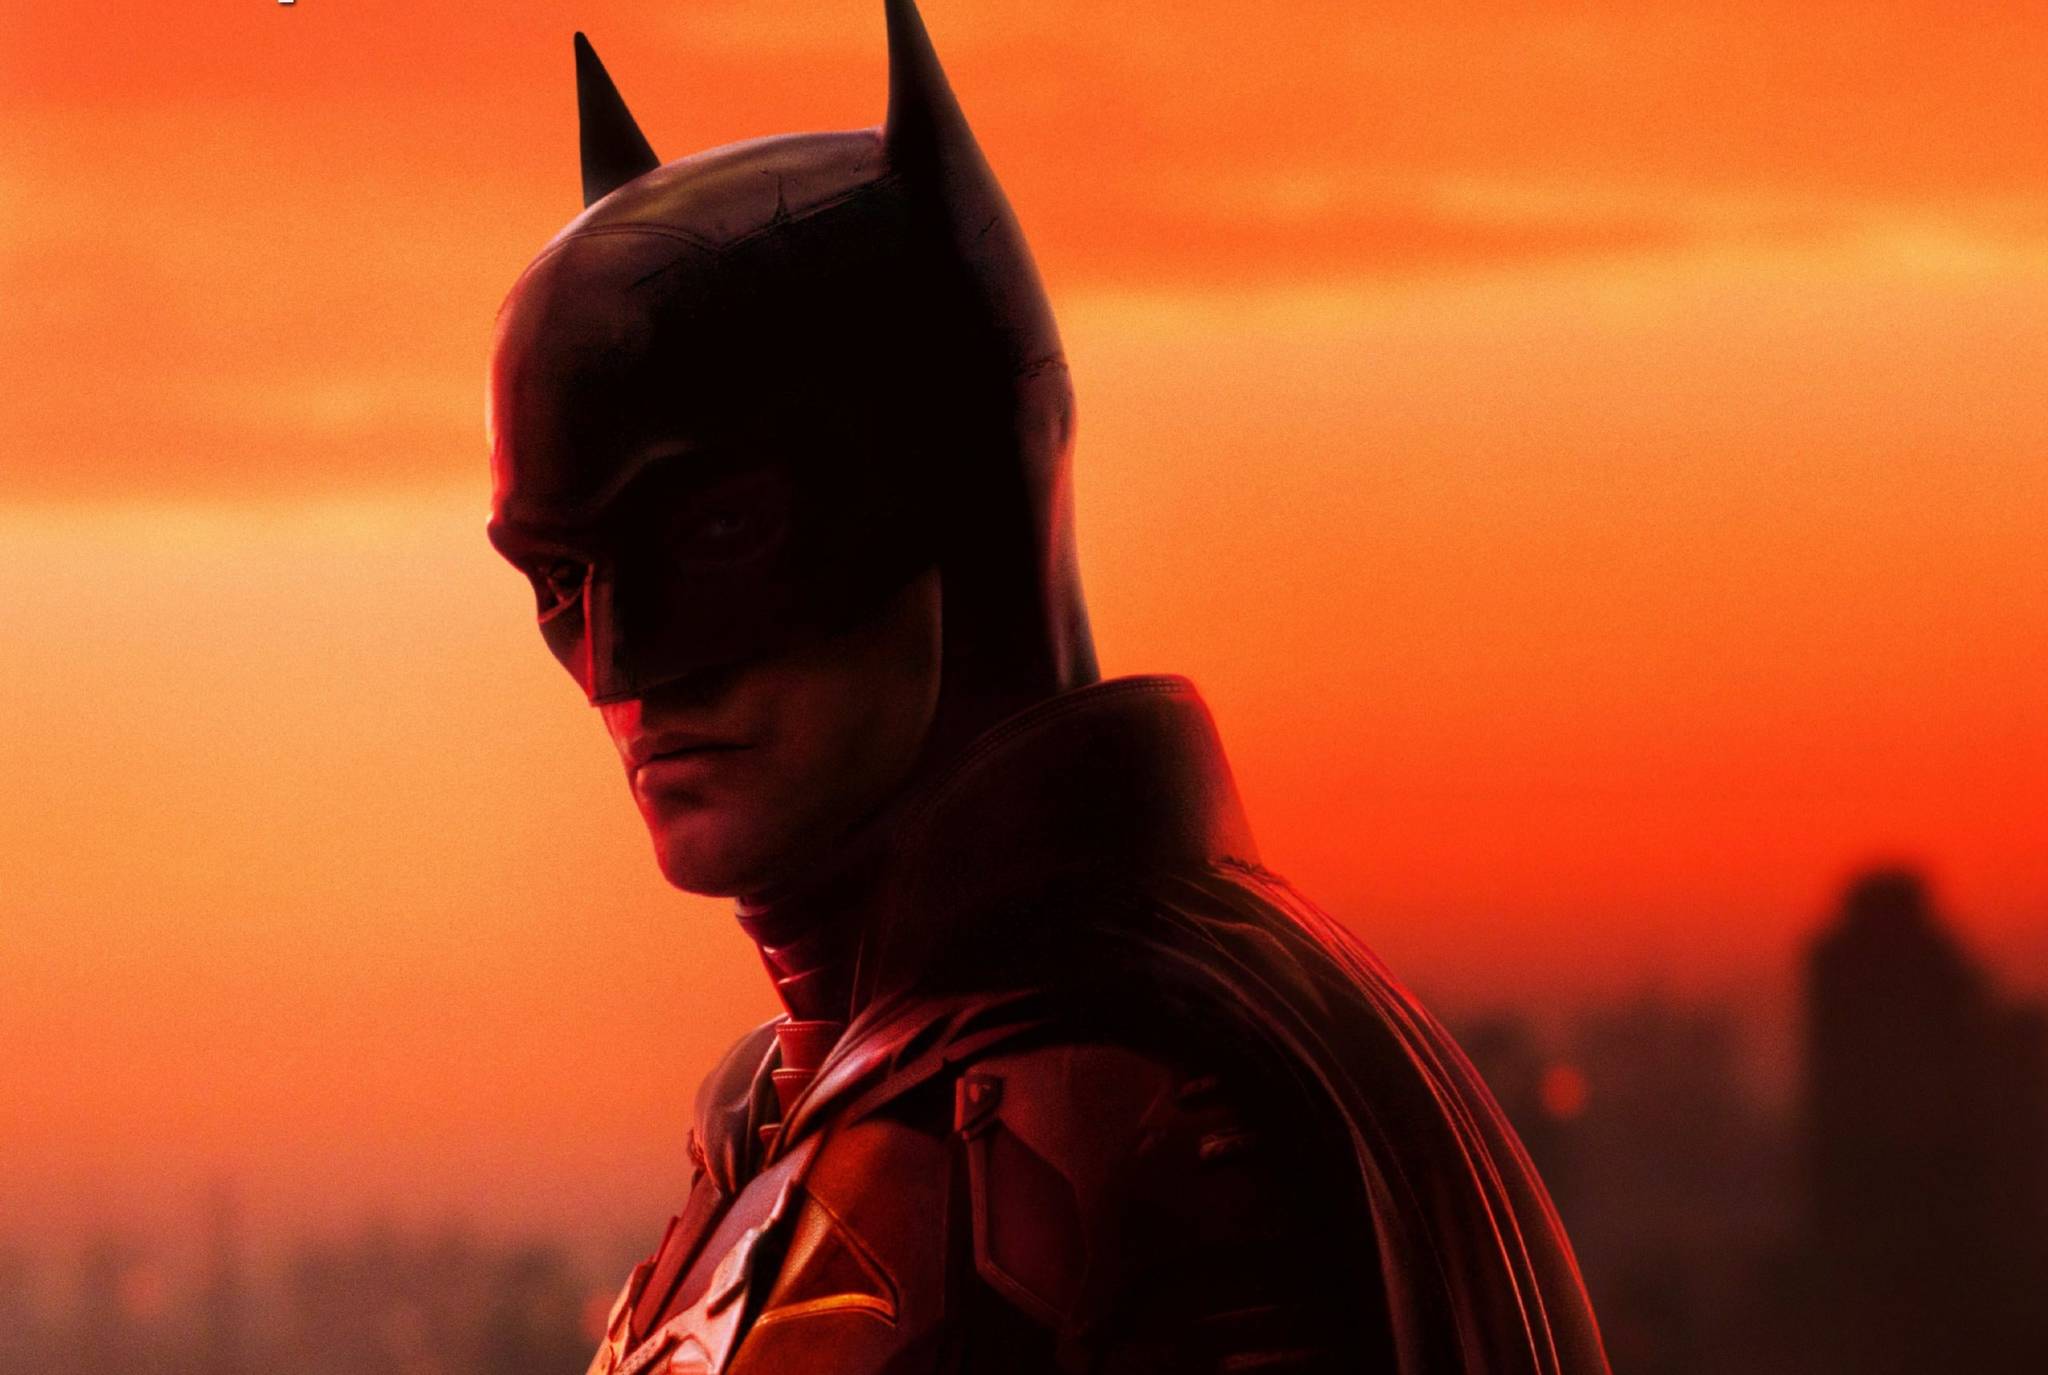 Cuántos actores han interpretado a Batman y quién ha hecho más películas? |  Marca